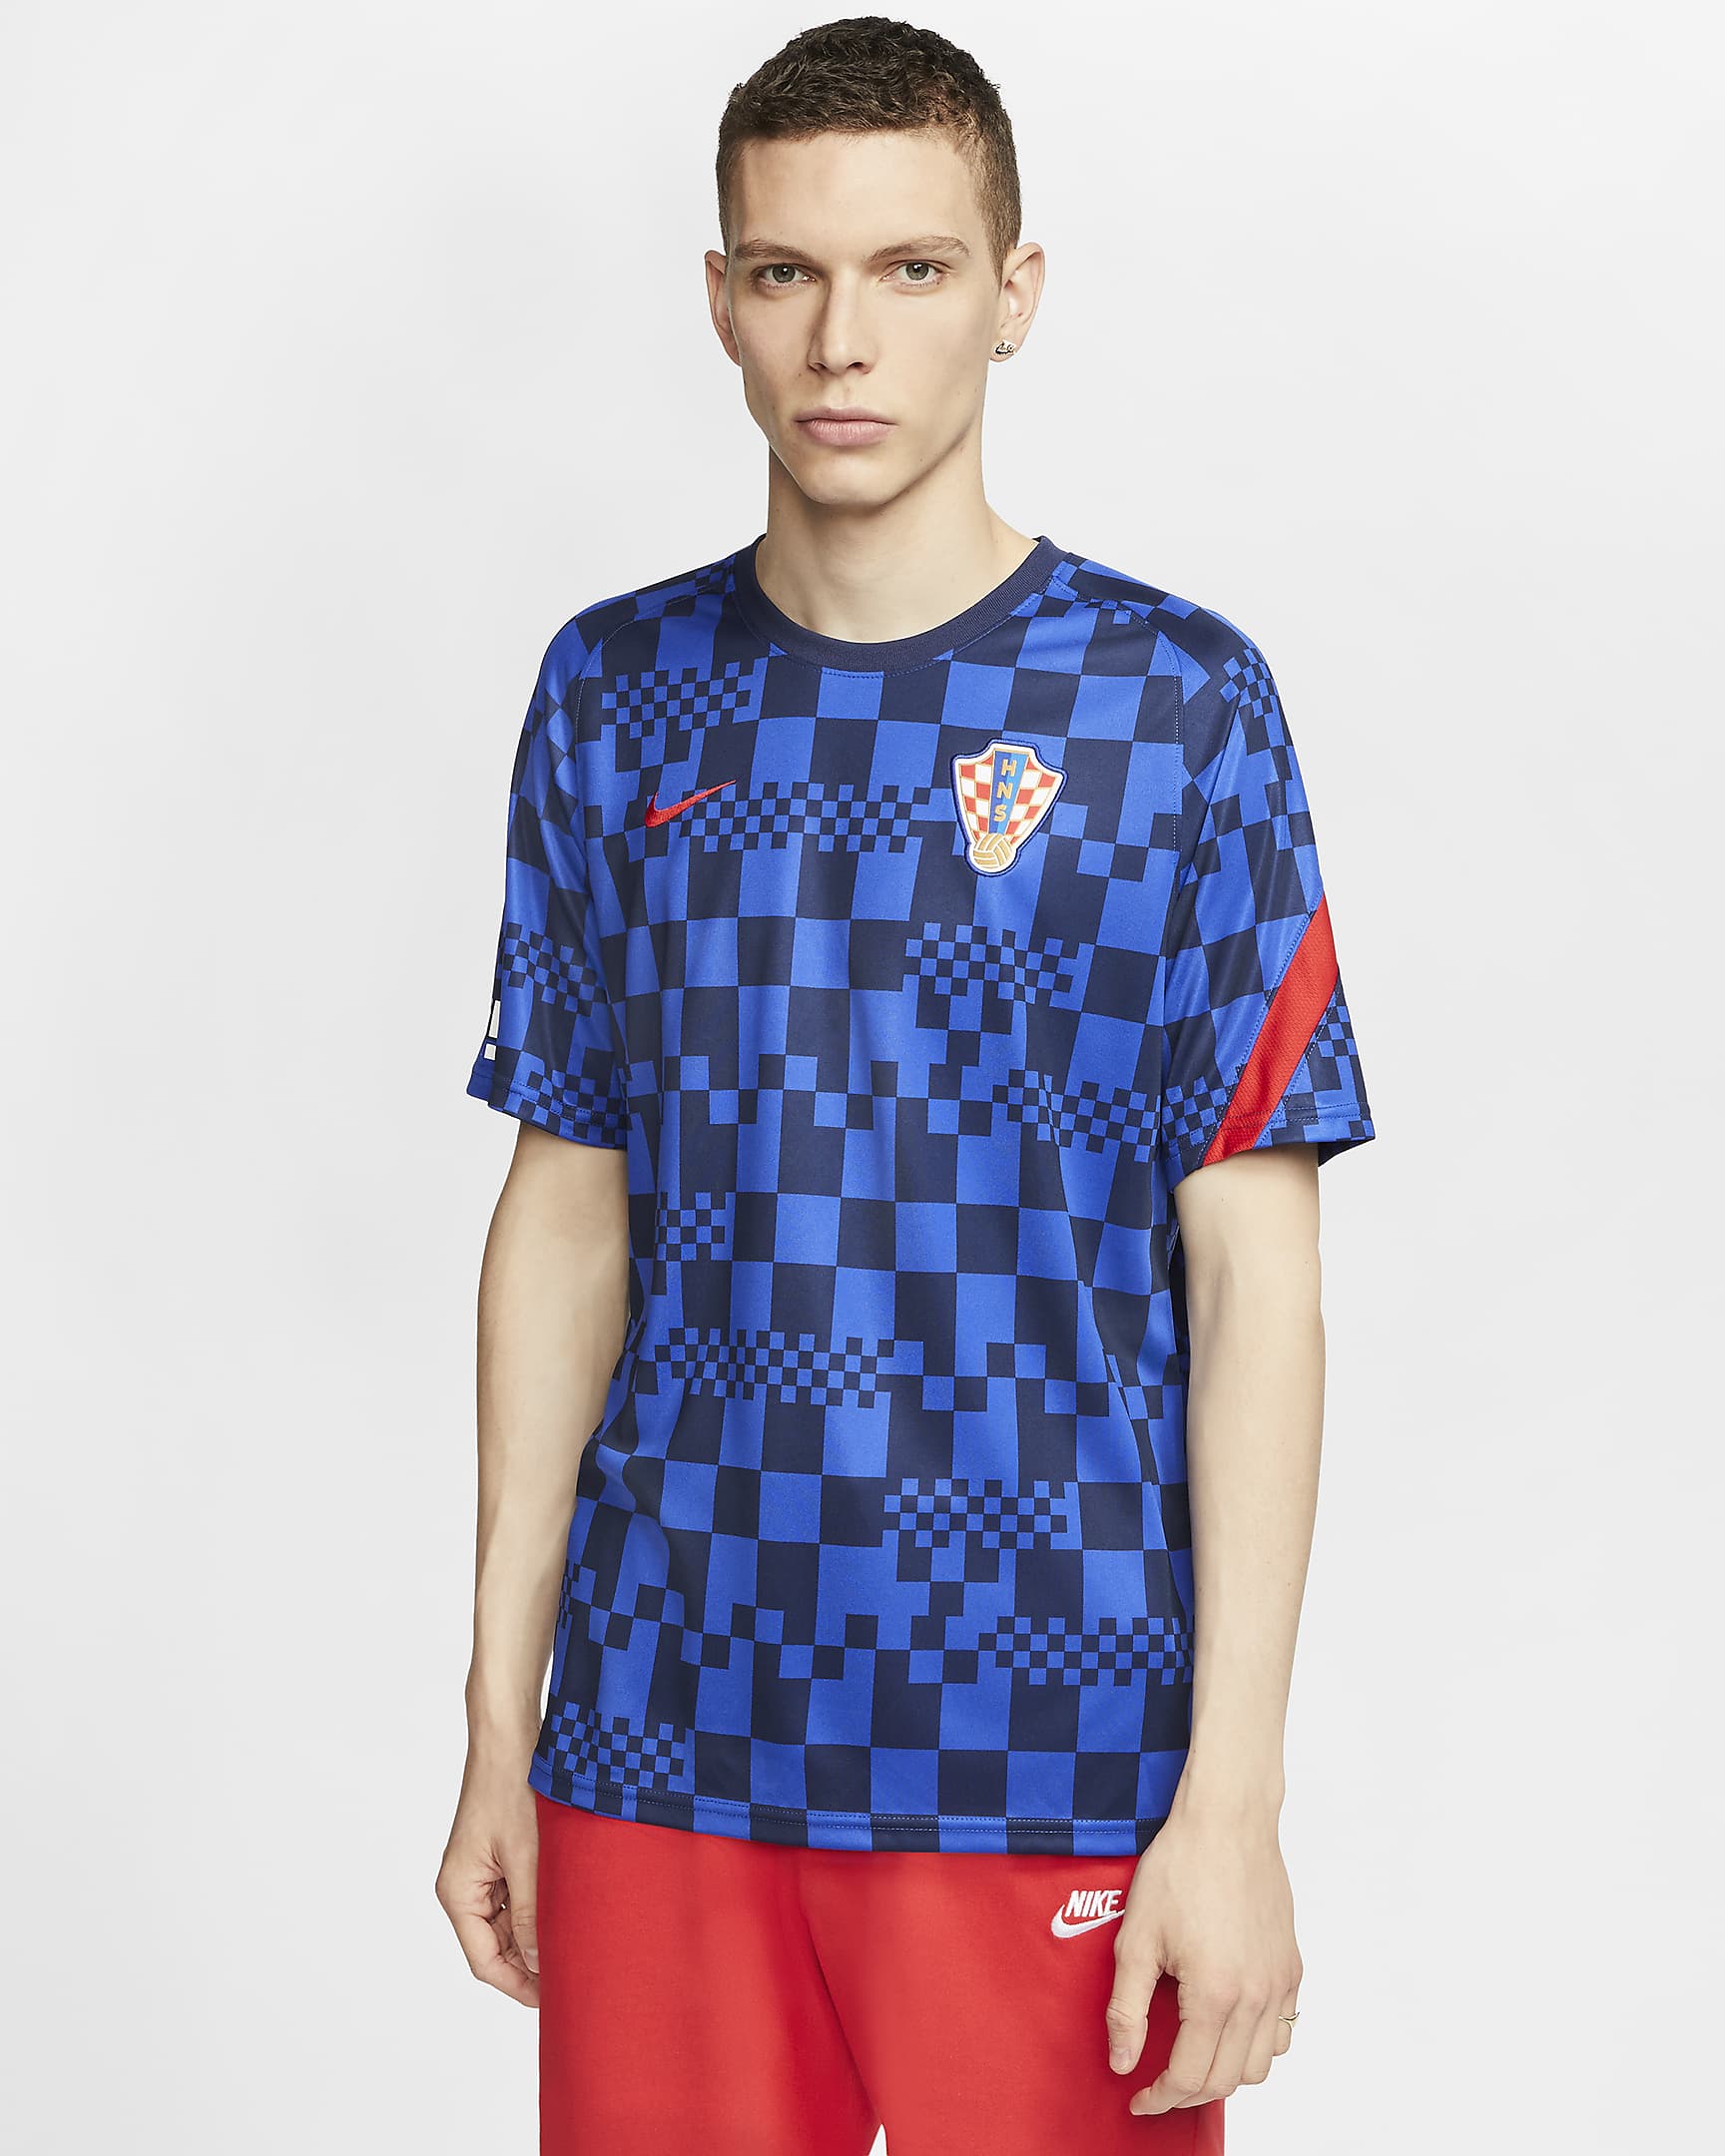 Kroatië warming-up shirt 2020-21